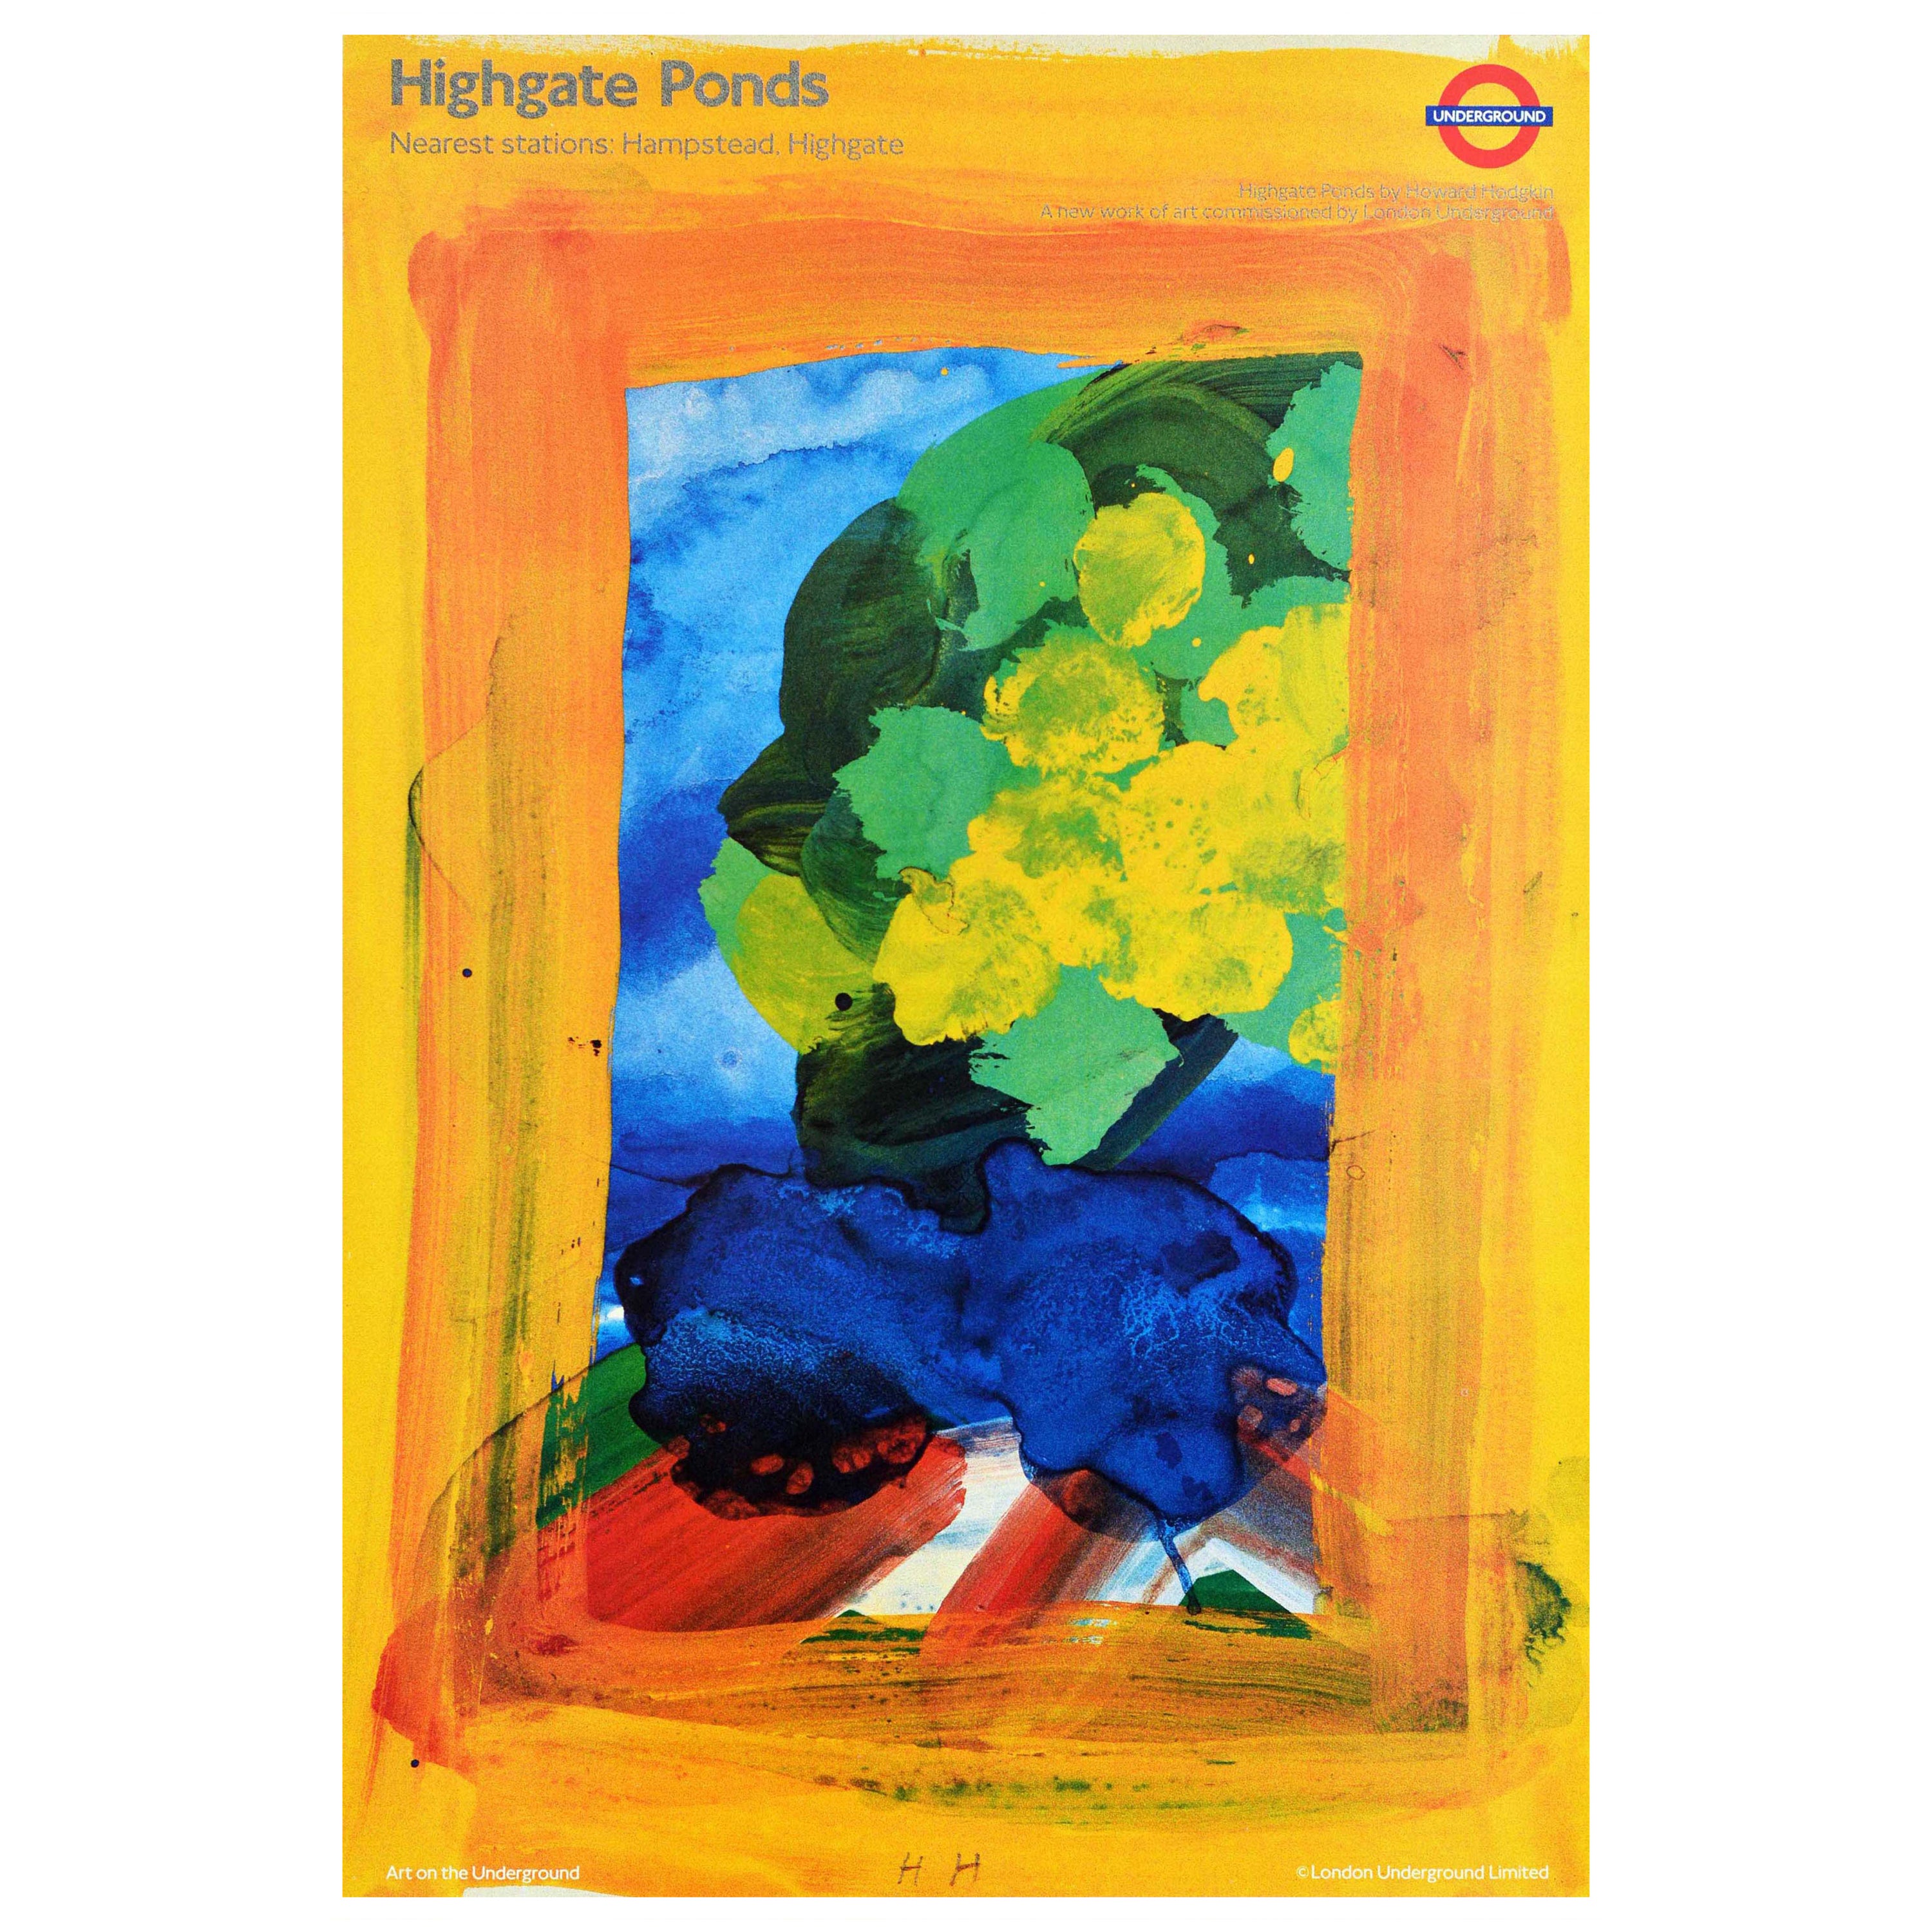 Póster original vintage del metro de Londres Highgate Ponds Howard Hodgkin Art LT